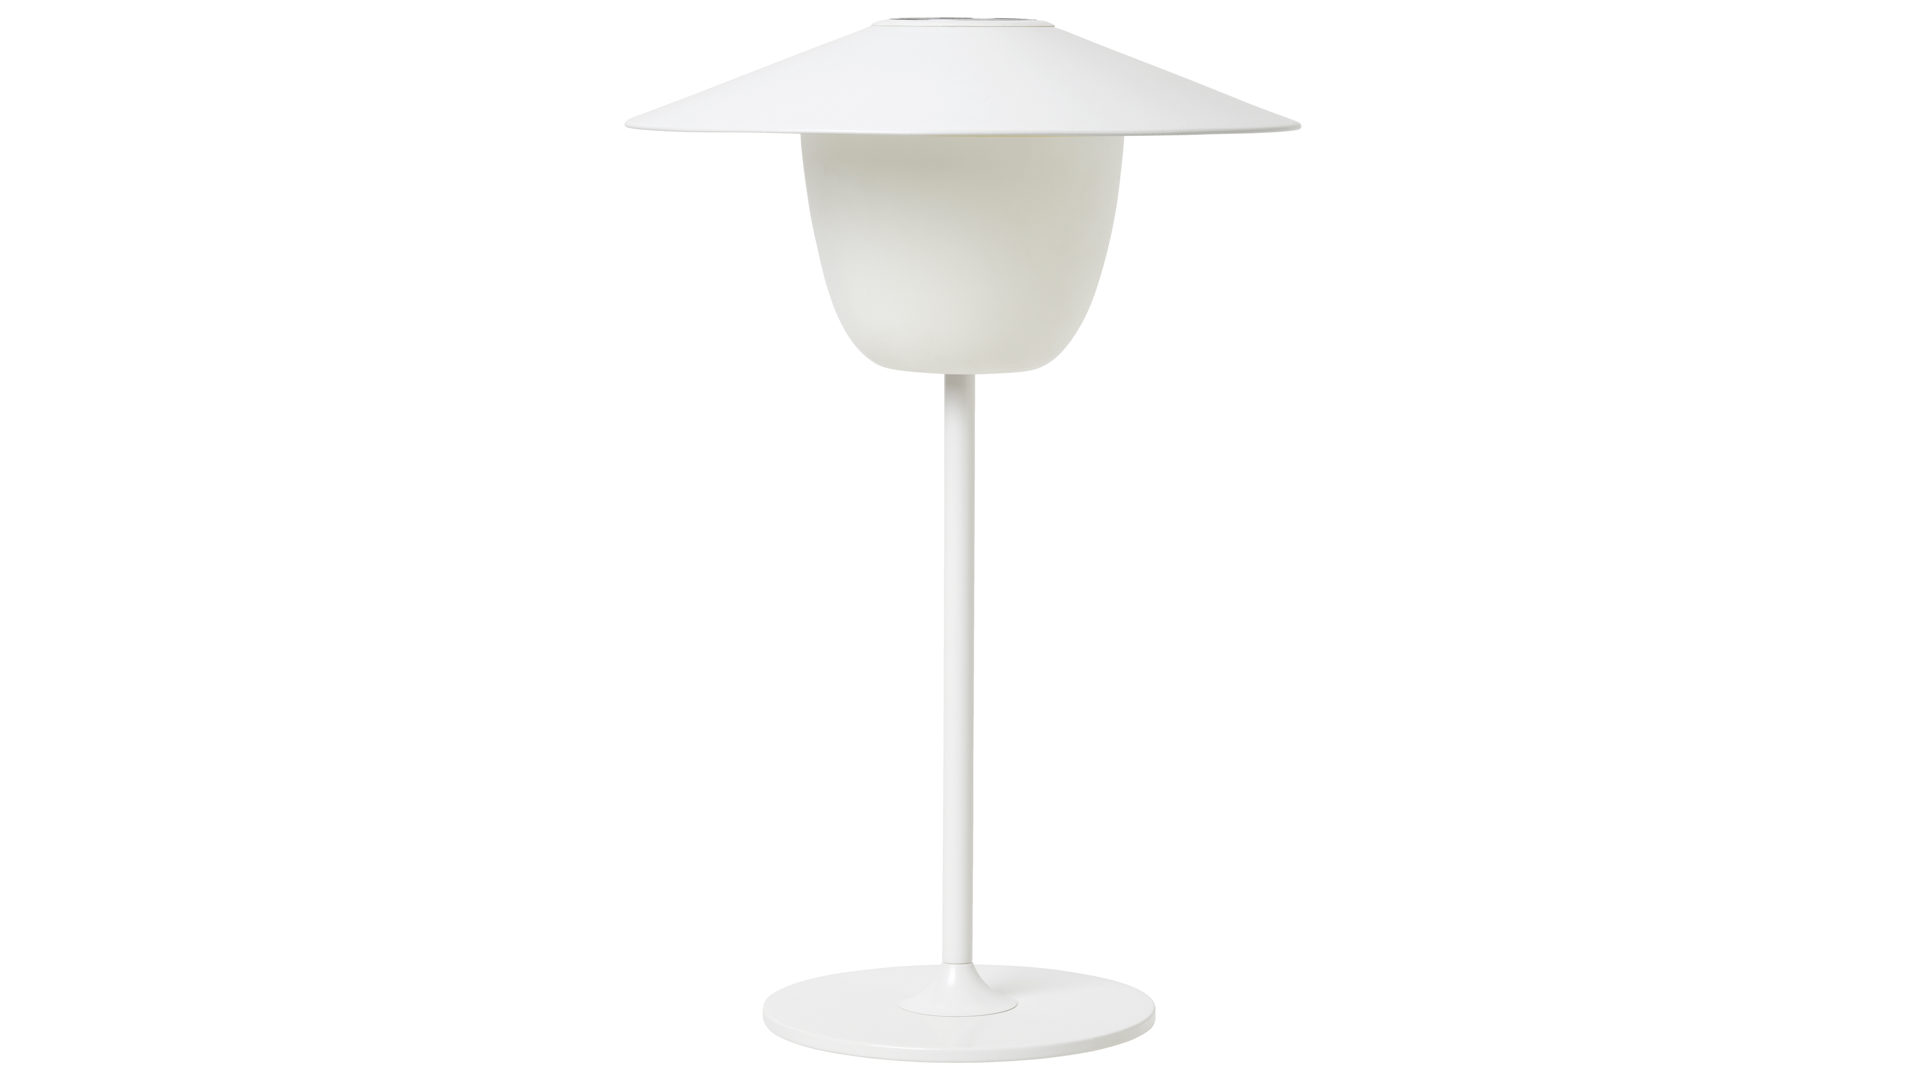 Tischleuchte Blomus aus Metall in Weiß blomus mobile Leuchte Ani Lamp weißes Aluminium & Milchglas – Durchmesser ca. 22 cm